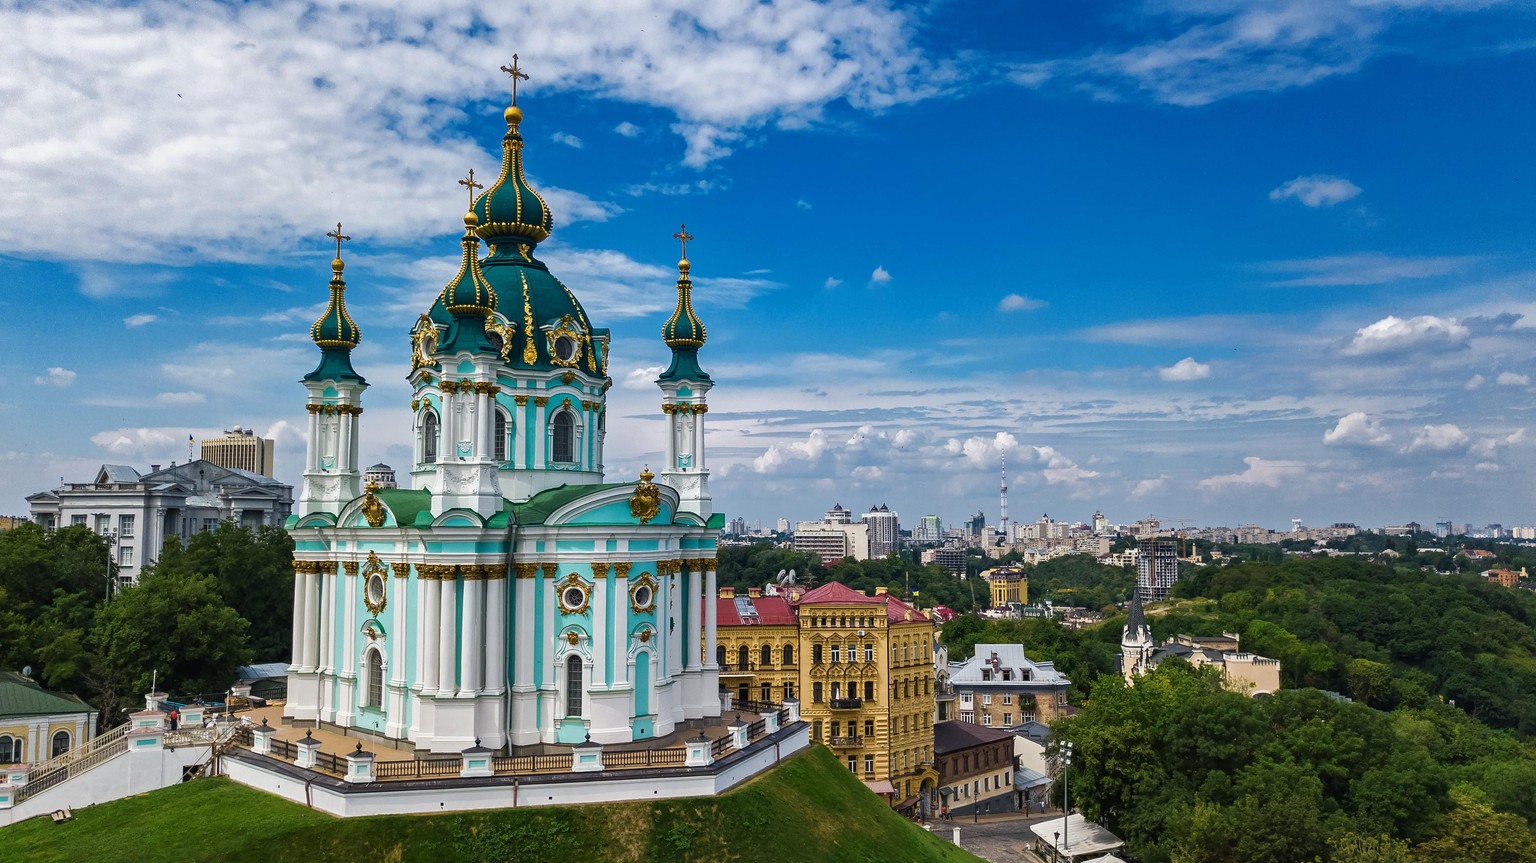 L&#039;église Saint André, est une église baroque située à Kiev, capitale de l&#039;Ukraine. Elle est parfois appelée à tort cathédrale.